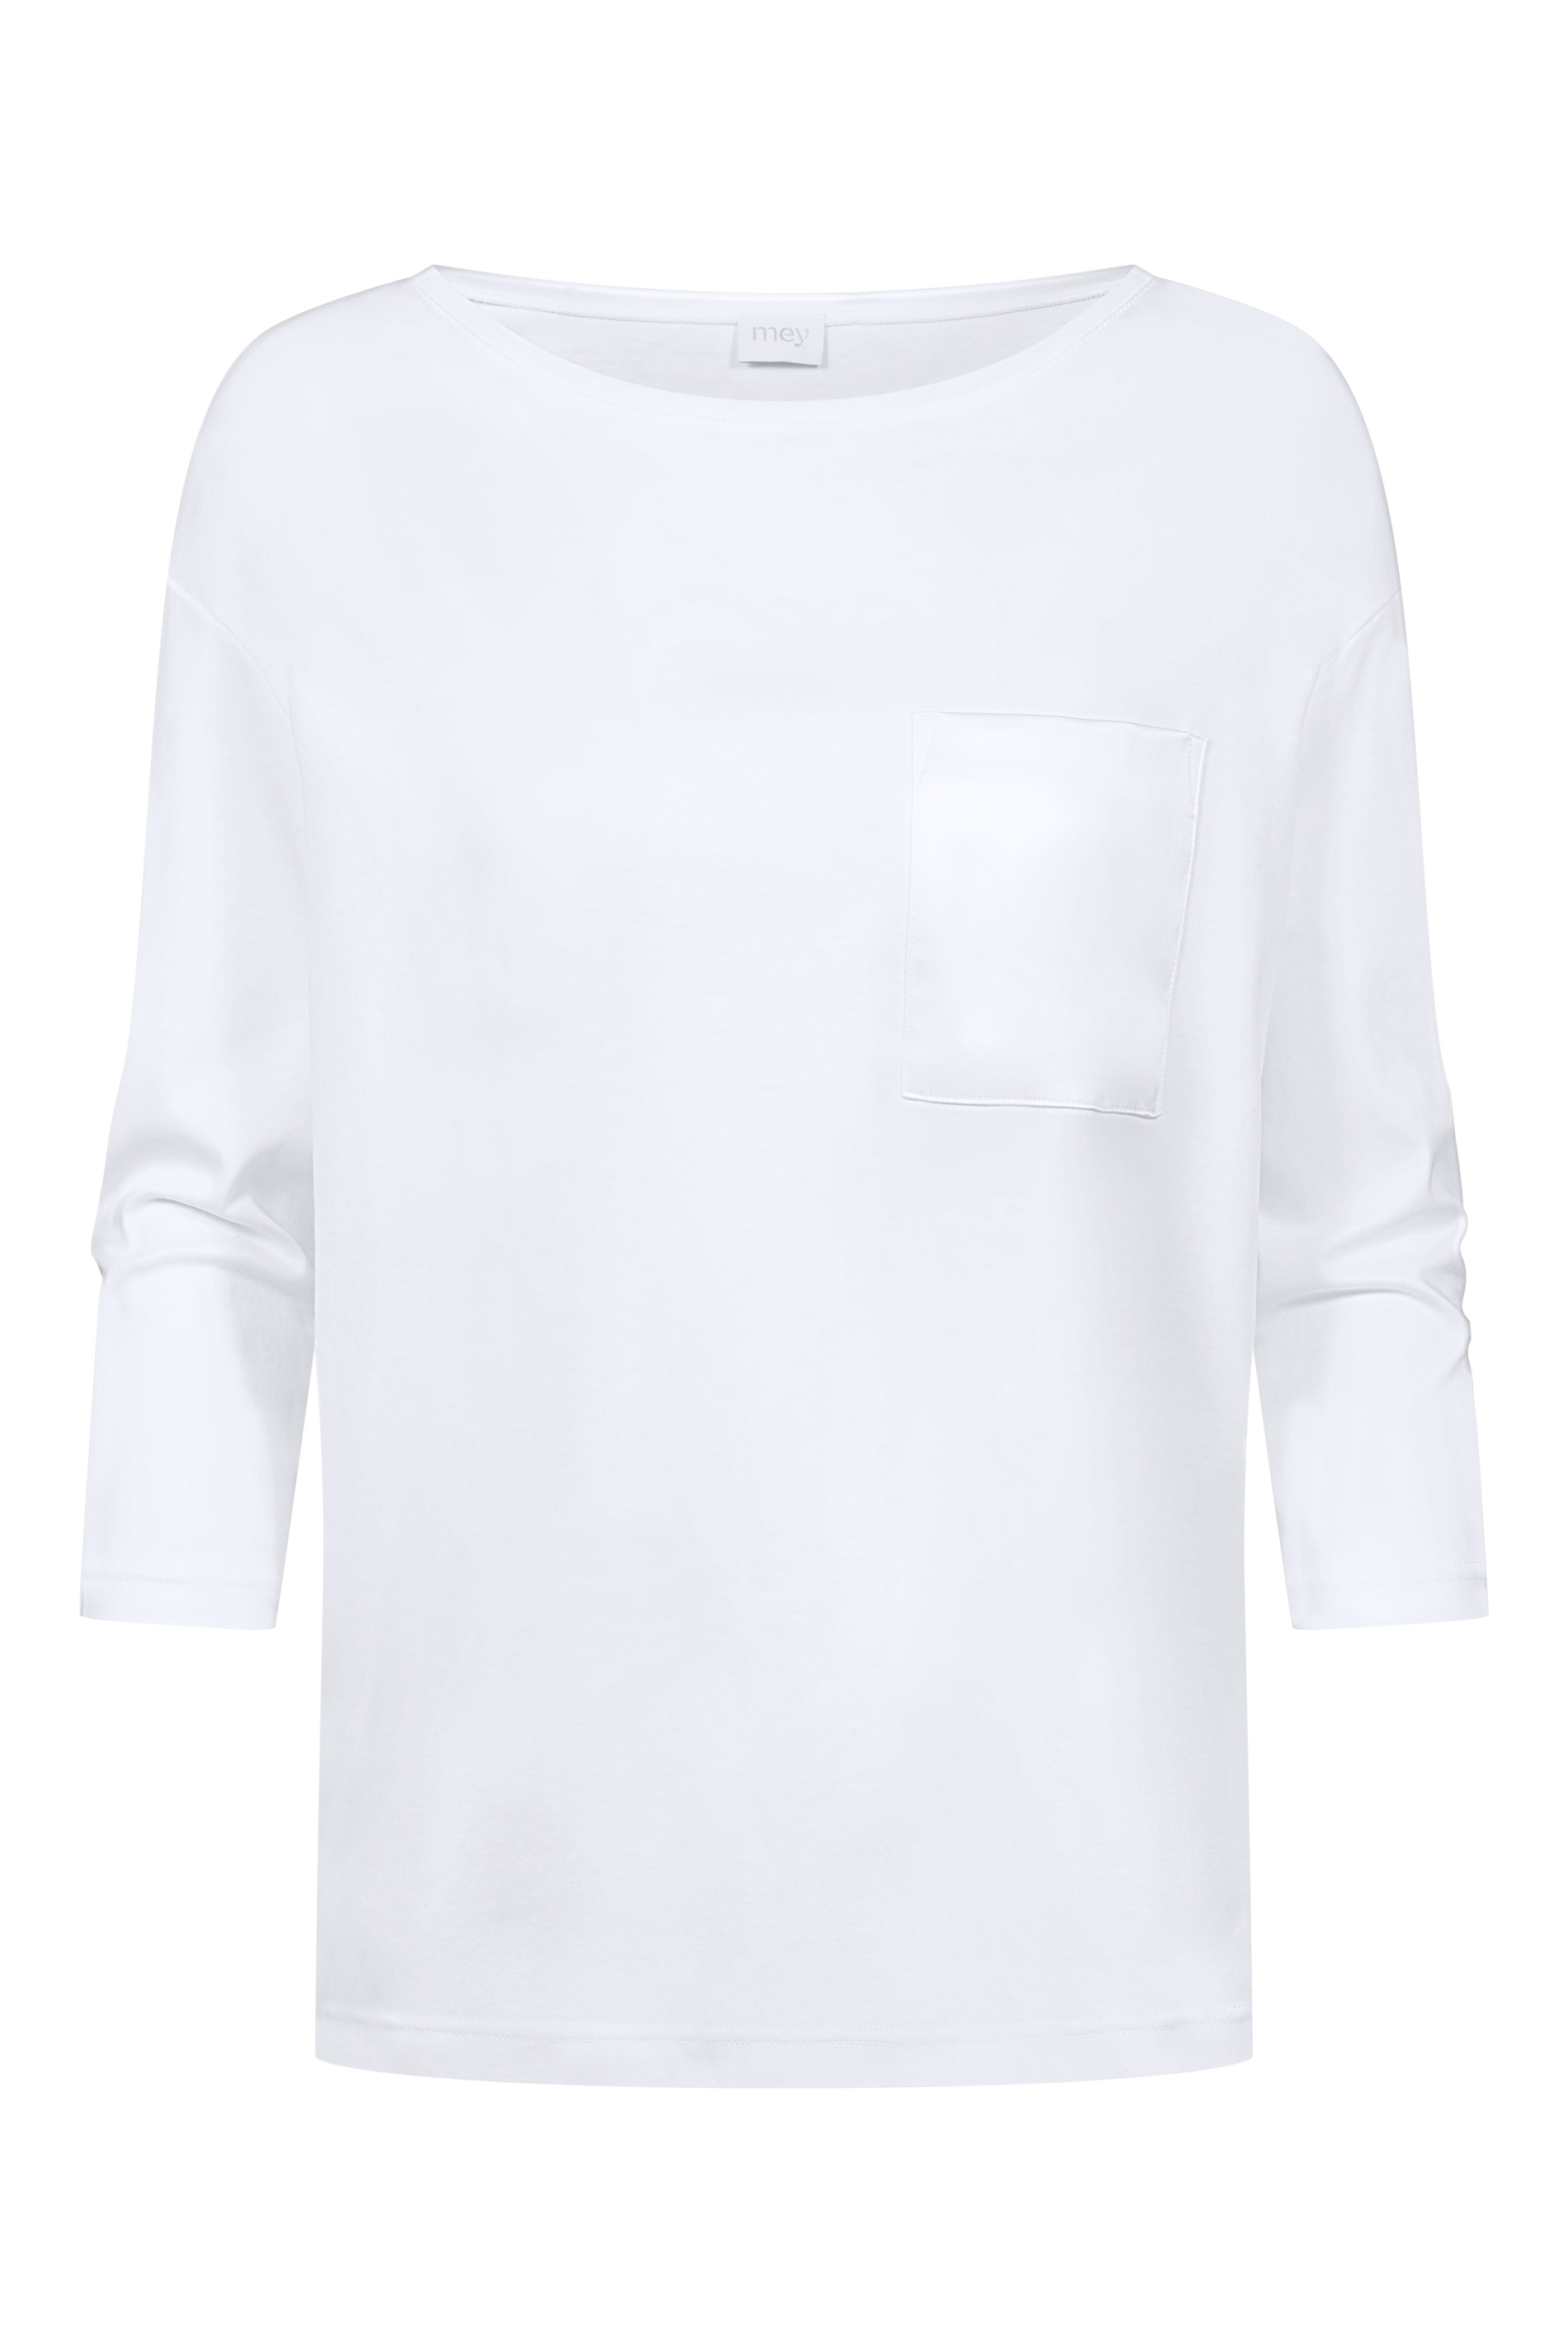 Shirt Weiss Serie Sleepsation Freisteller | mey®